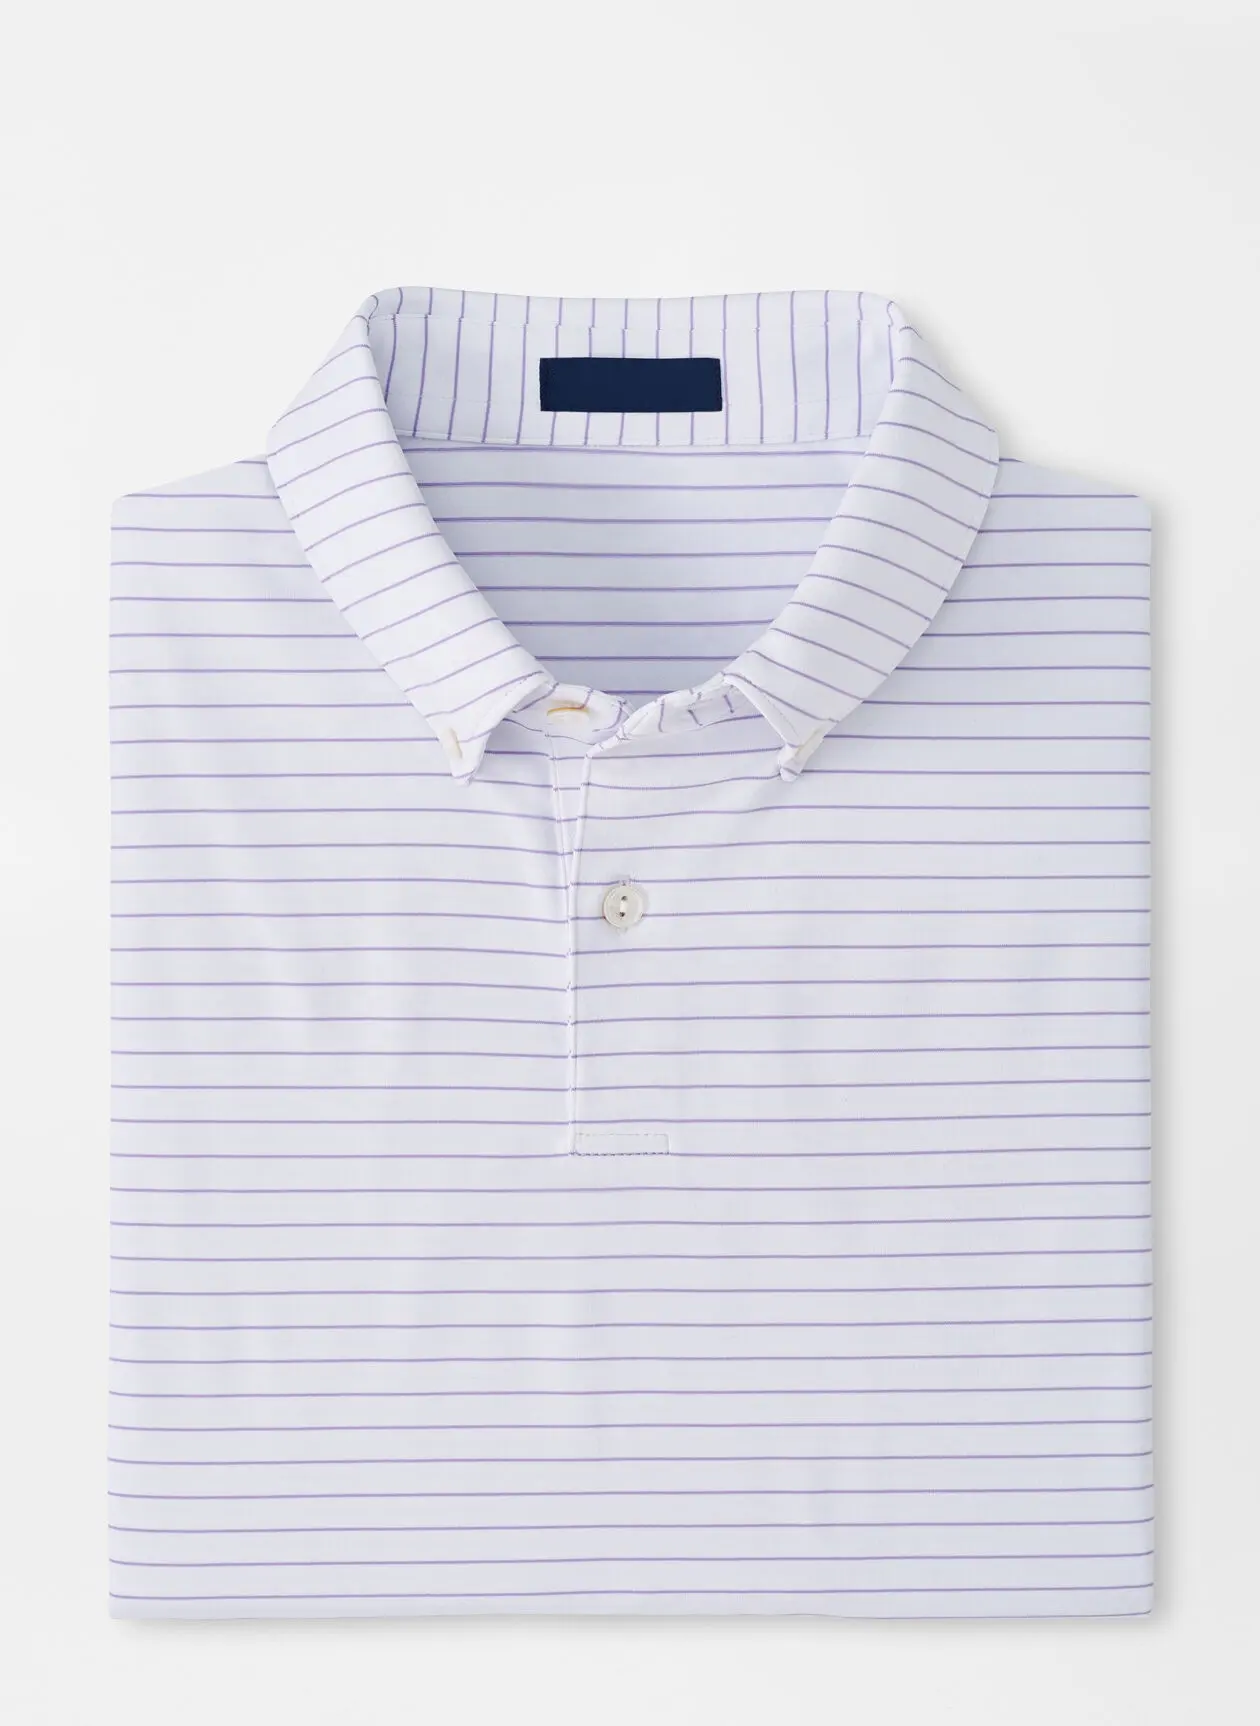 Camisa de polo listrada para homens, camisa de polo personalizada com dois tons de luxo de alta qualidade, plus size